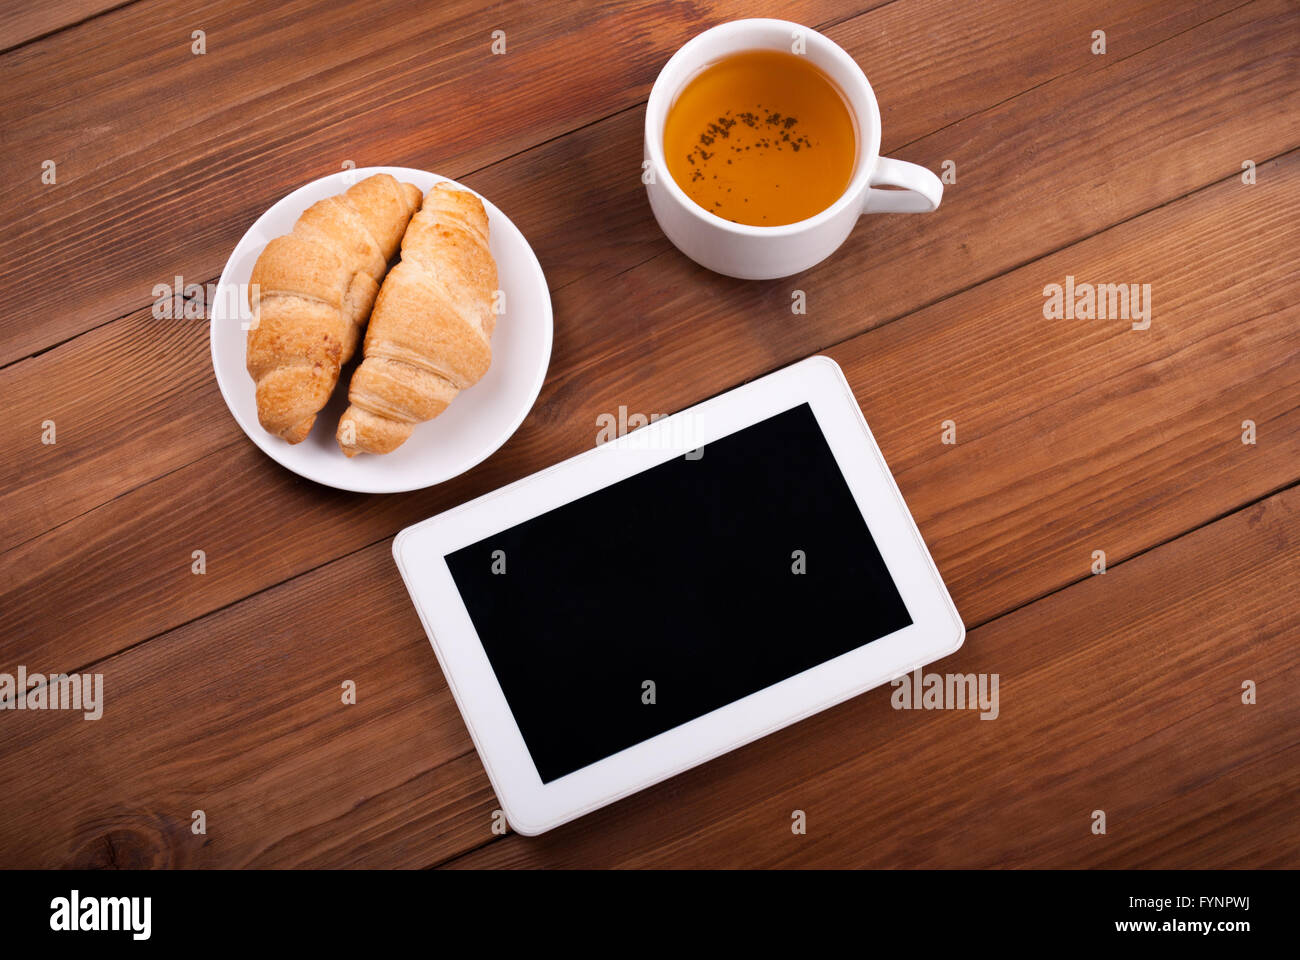 Tasse Tee Tablet Croissants auf einem Holztisch. Stockfoto